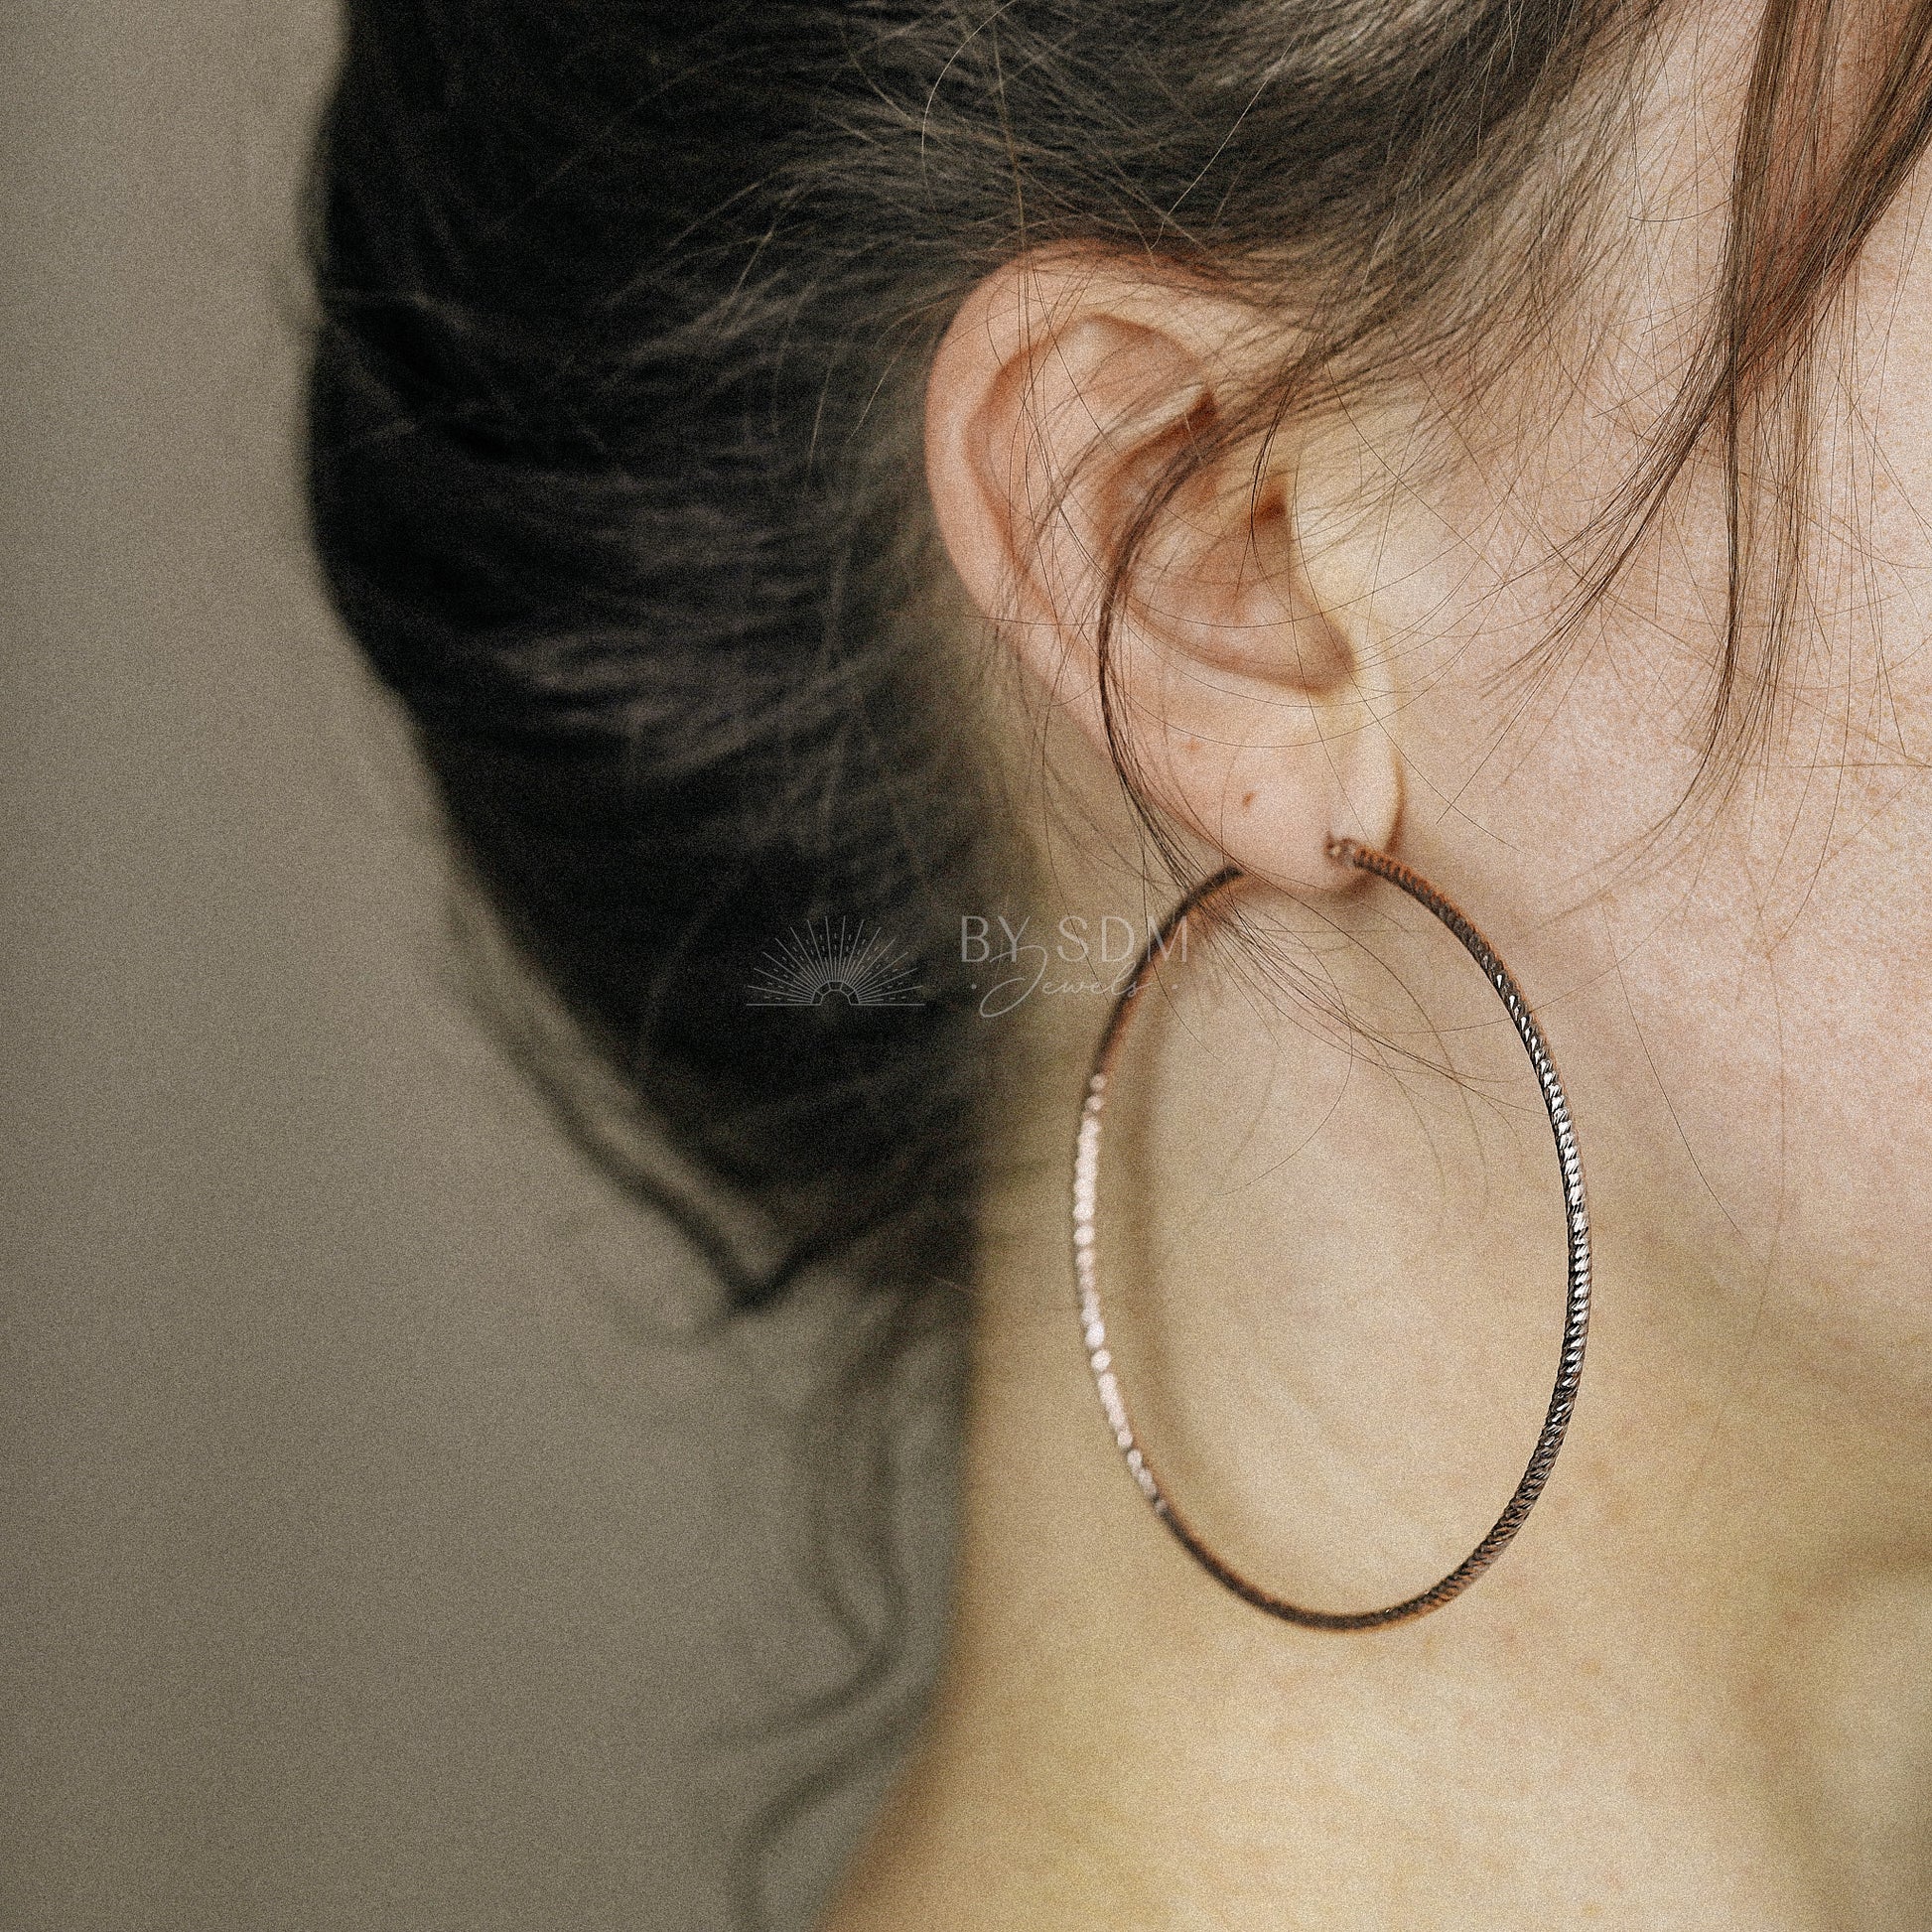 Thin Gold Hoop Earrings Large Hoop Earrings Diamond Cut Dainty Hoop Earrings Textured Hoops Minimalist Hoop Earrings Minimal Hoop Earrings